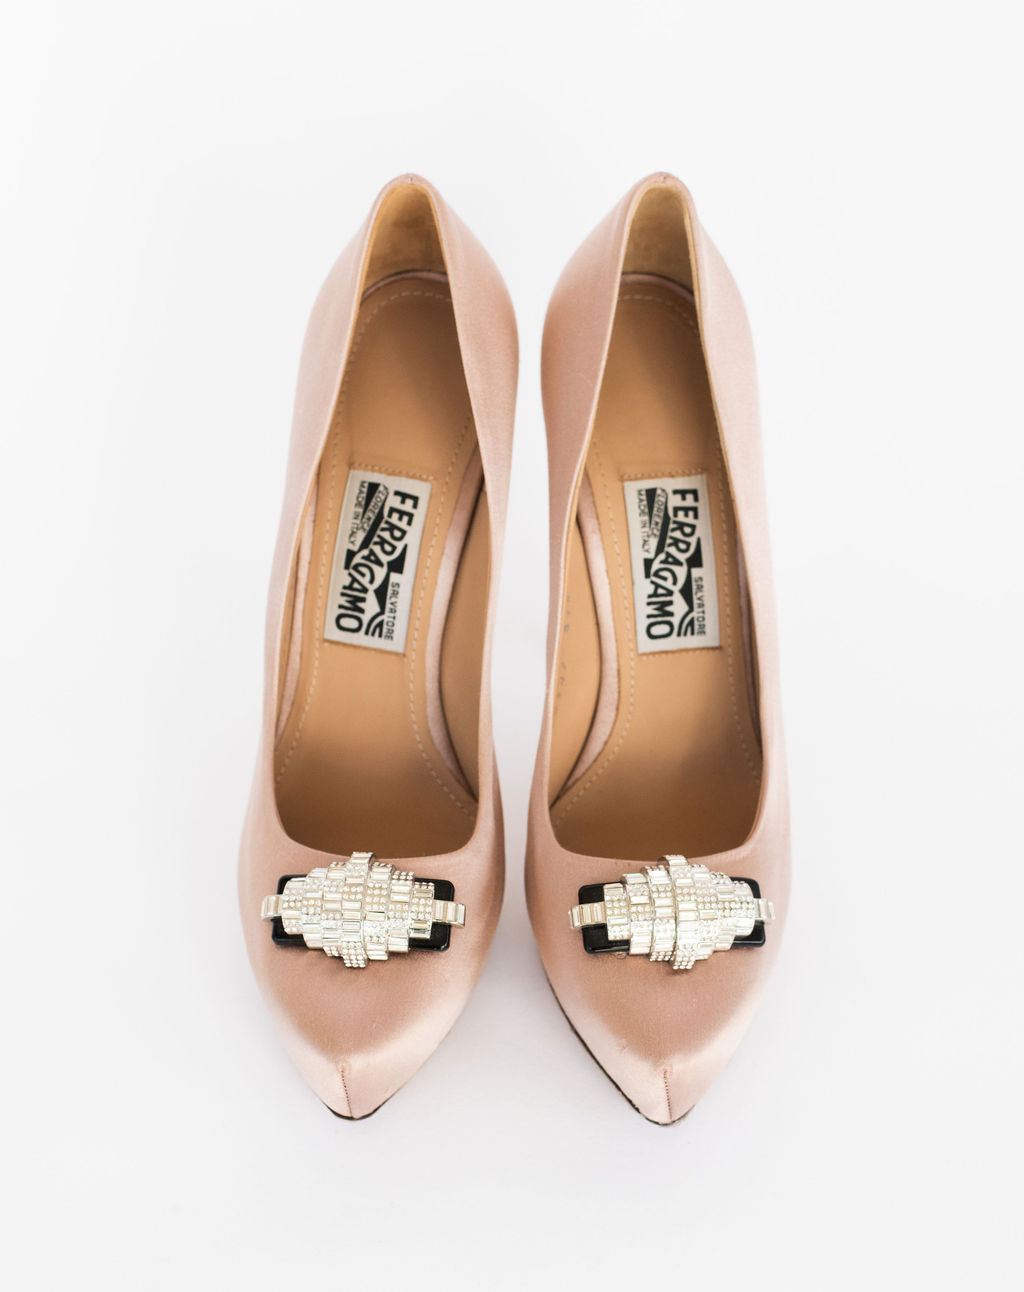 Salvatore Ferragamo Pumps- Size 8.5 – Haute Shoes & Bags